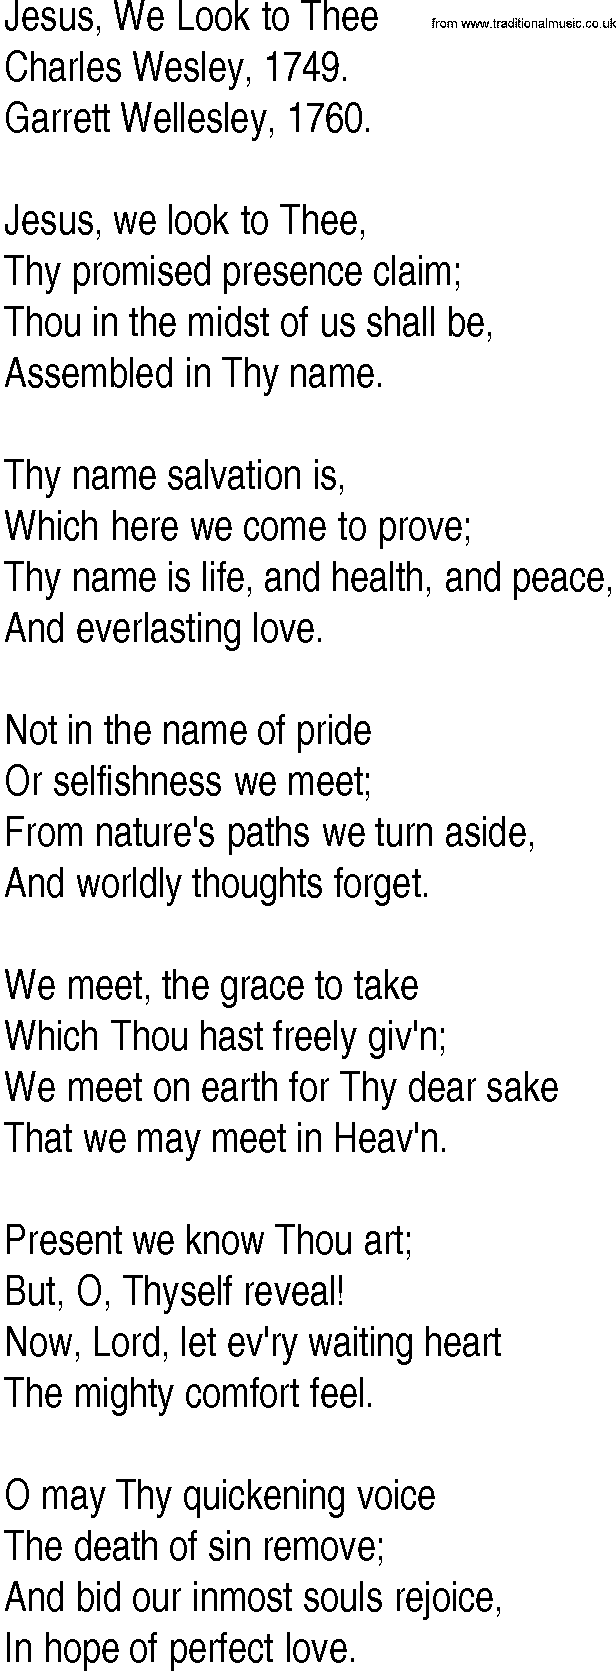 Hymn and Gospel Song: Jesus, We Look to Thee by Charles Wesley lyrics